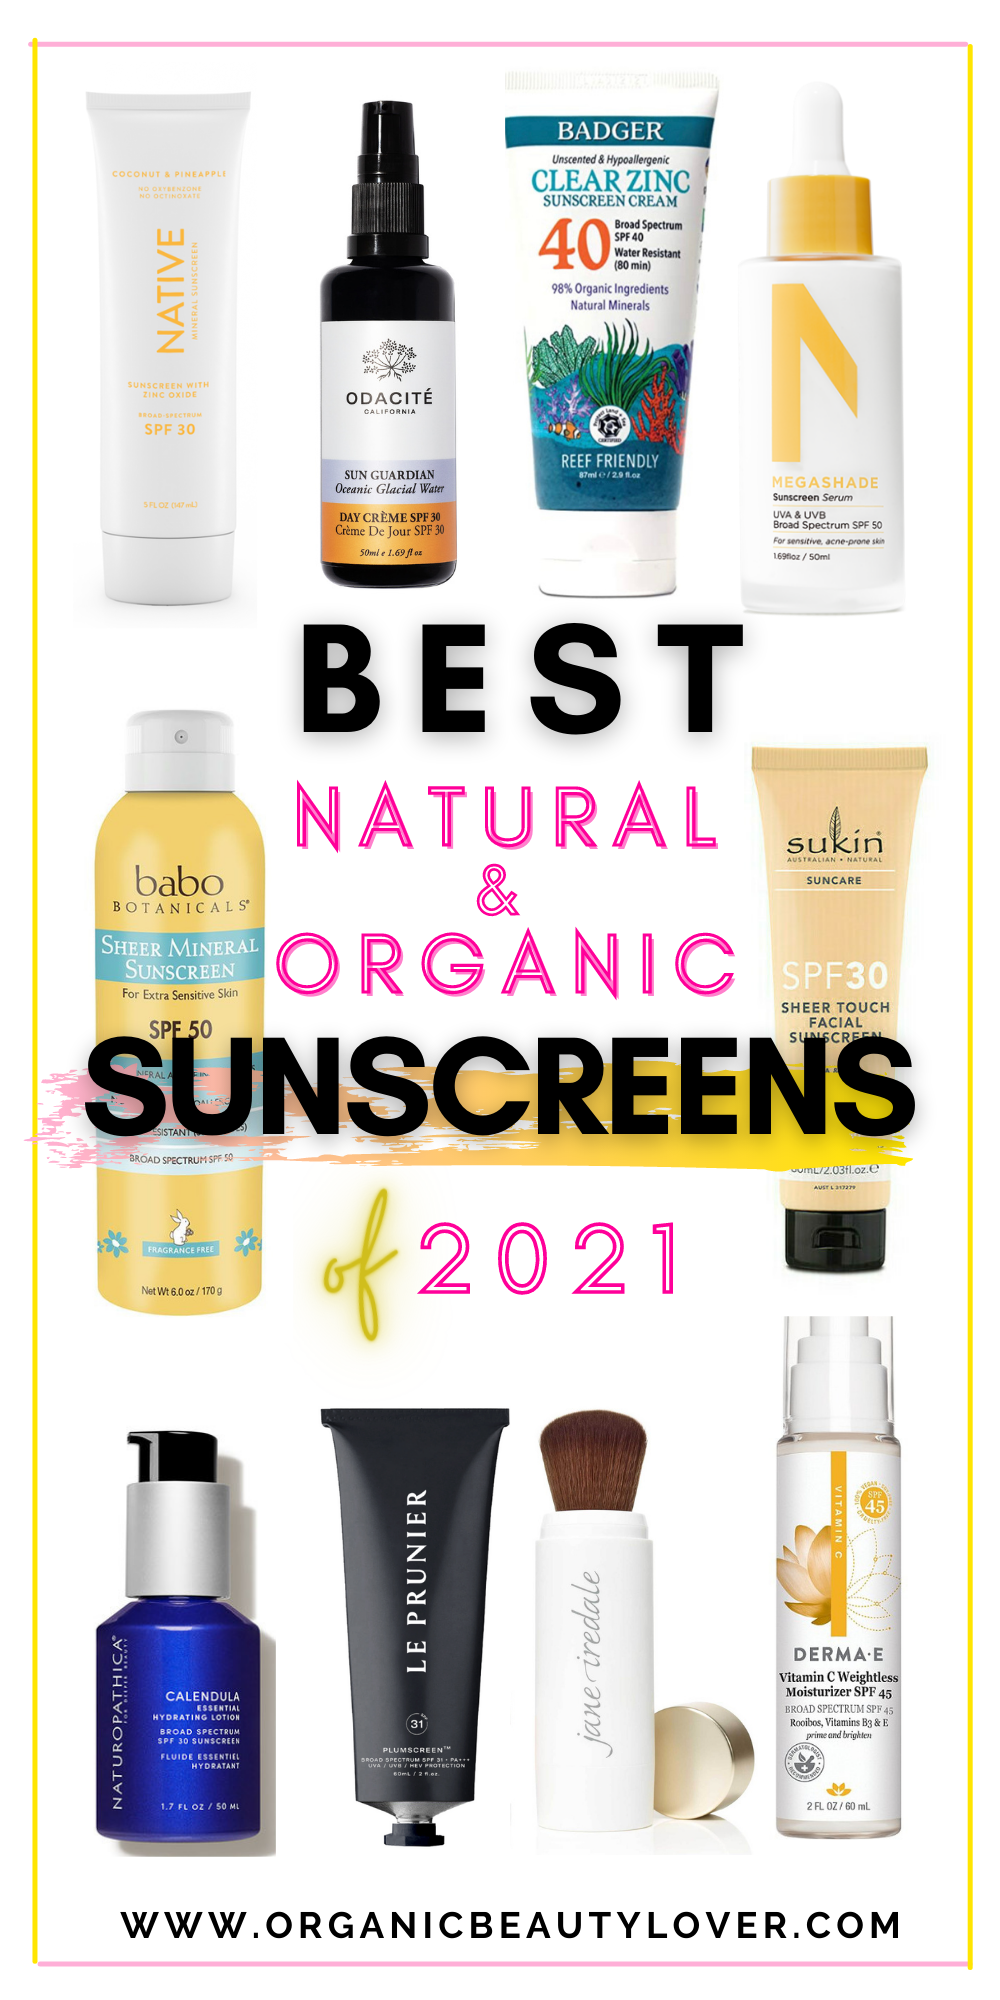 Best natural sunscreens 2021